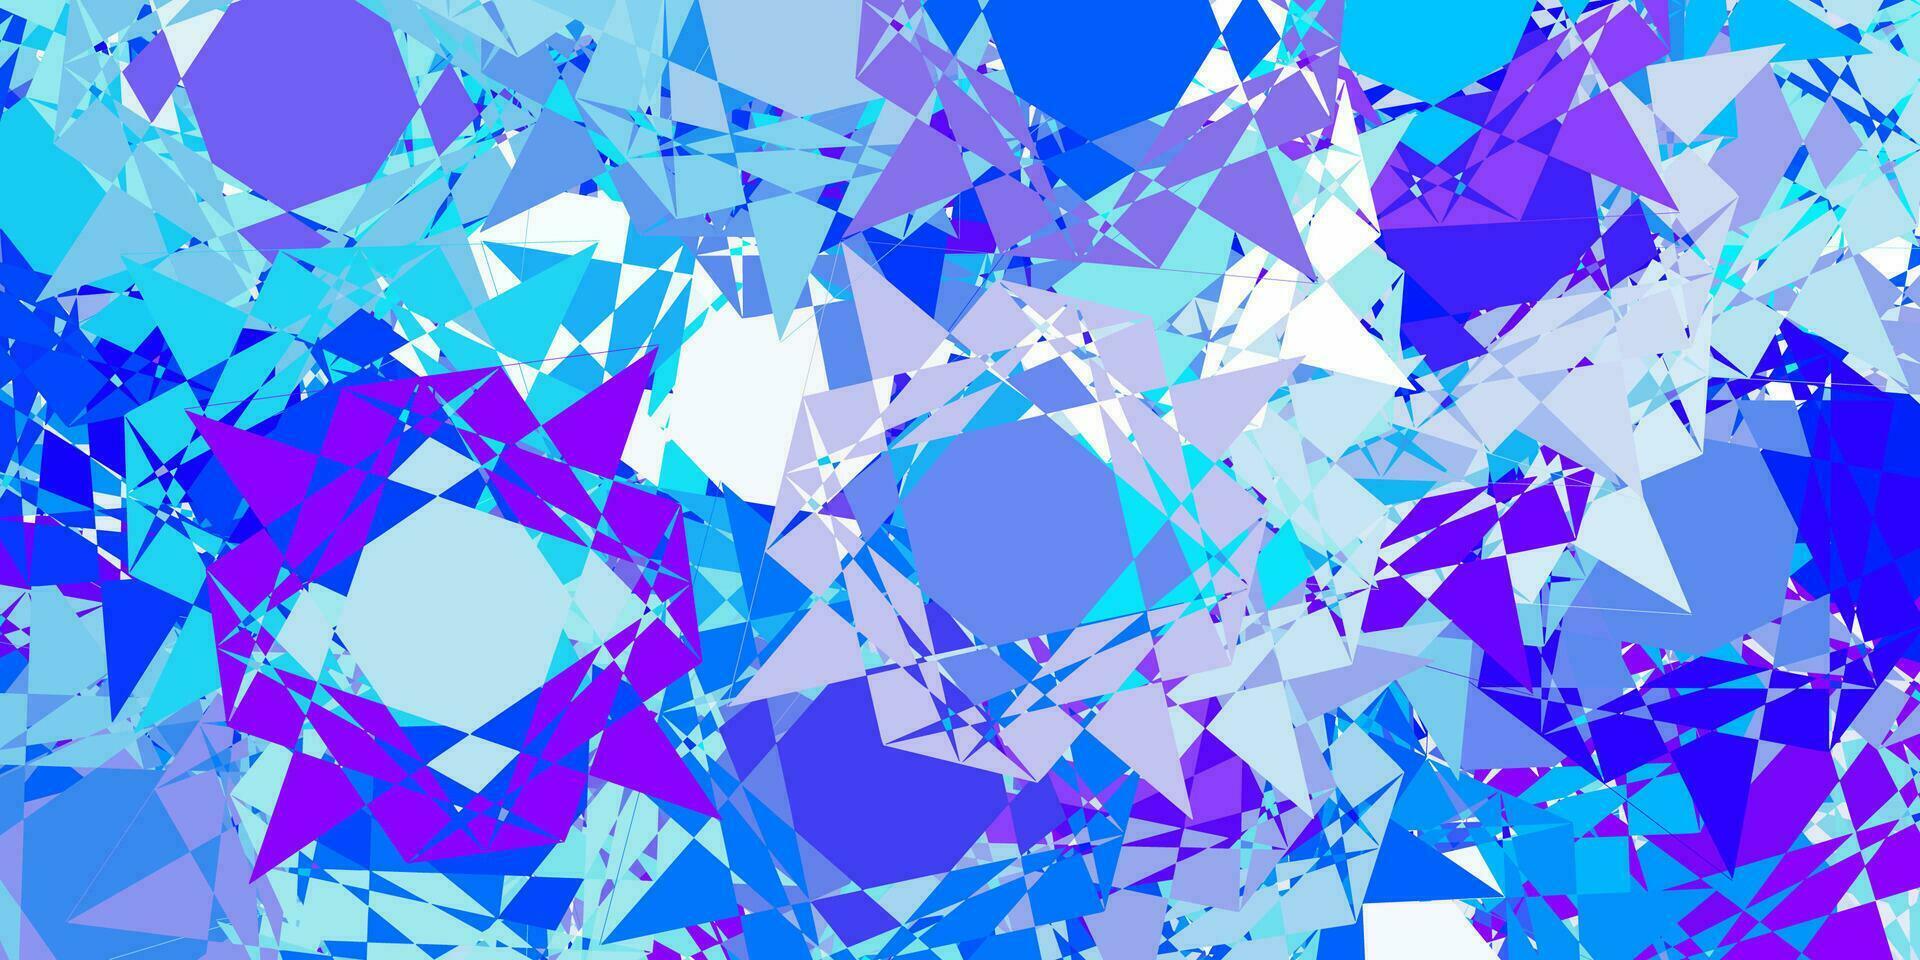 mise en page de vecteur rose clair, bleu avec des formes triangulaires.